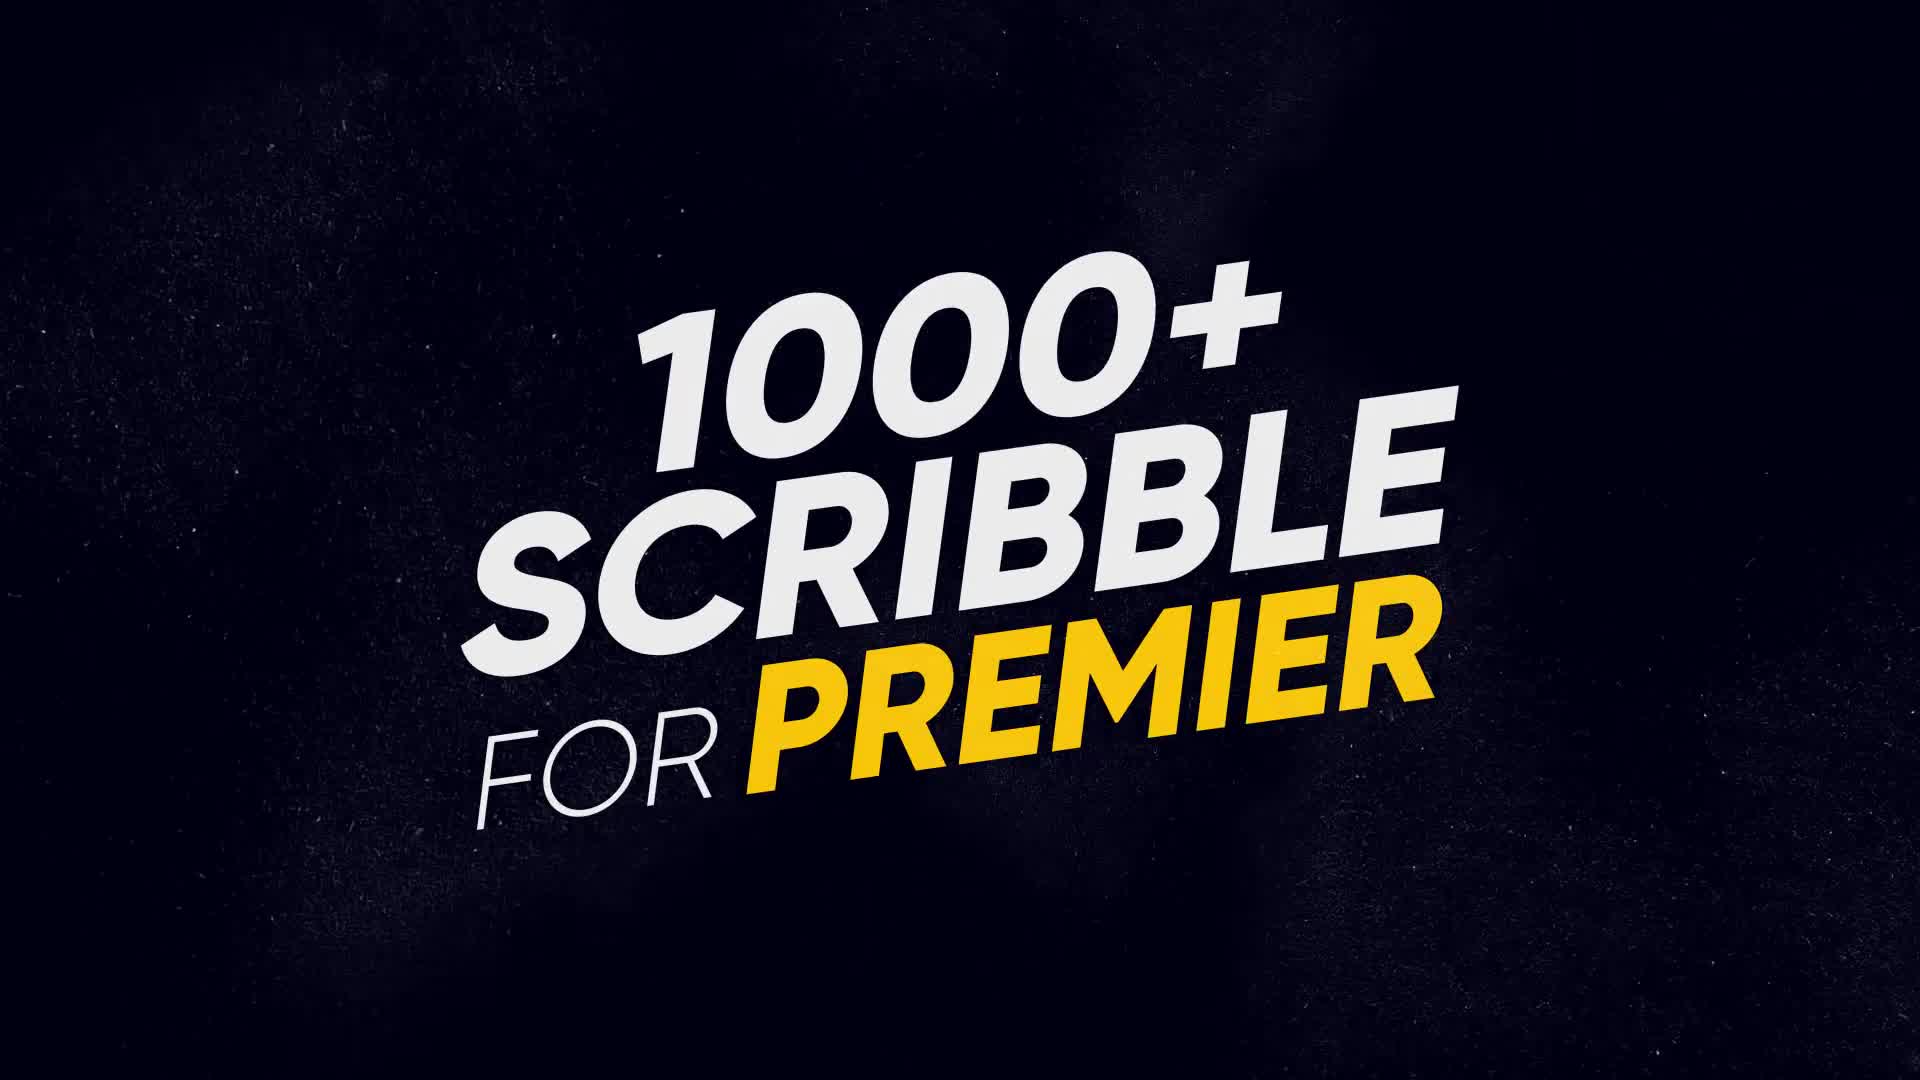 1000+ Scribble Premiere Videohive 23384393 Premiere Pro Image 1